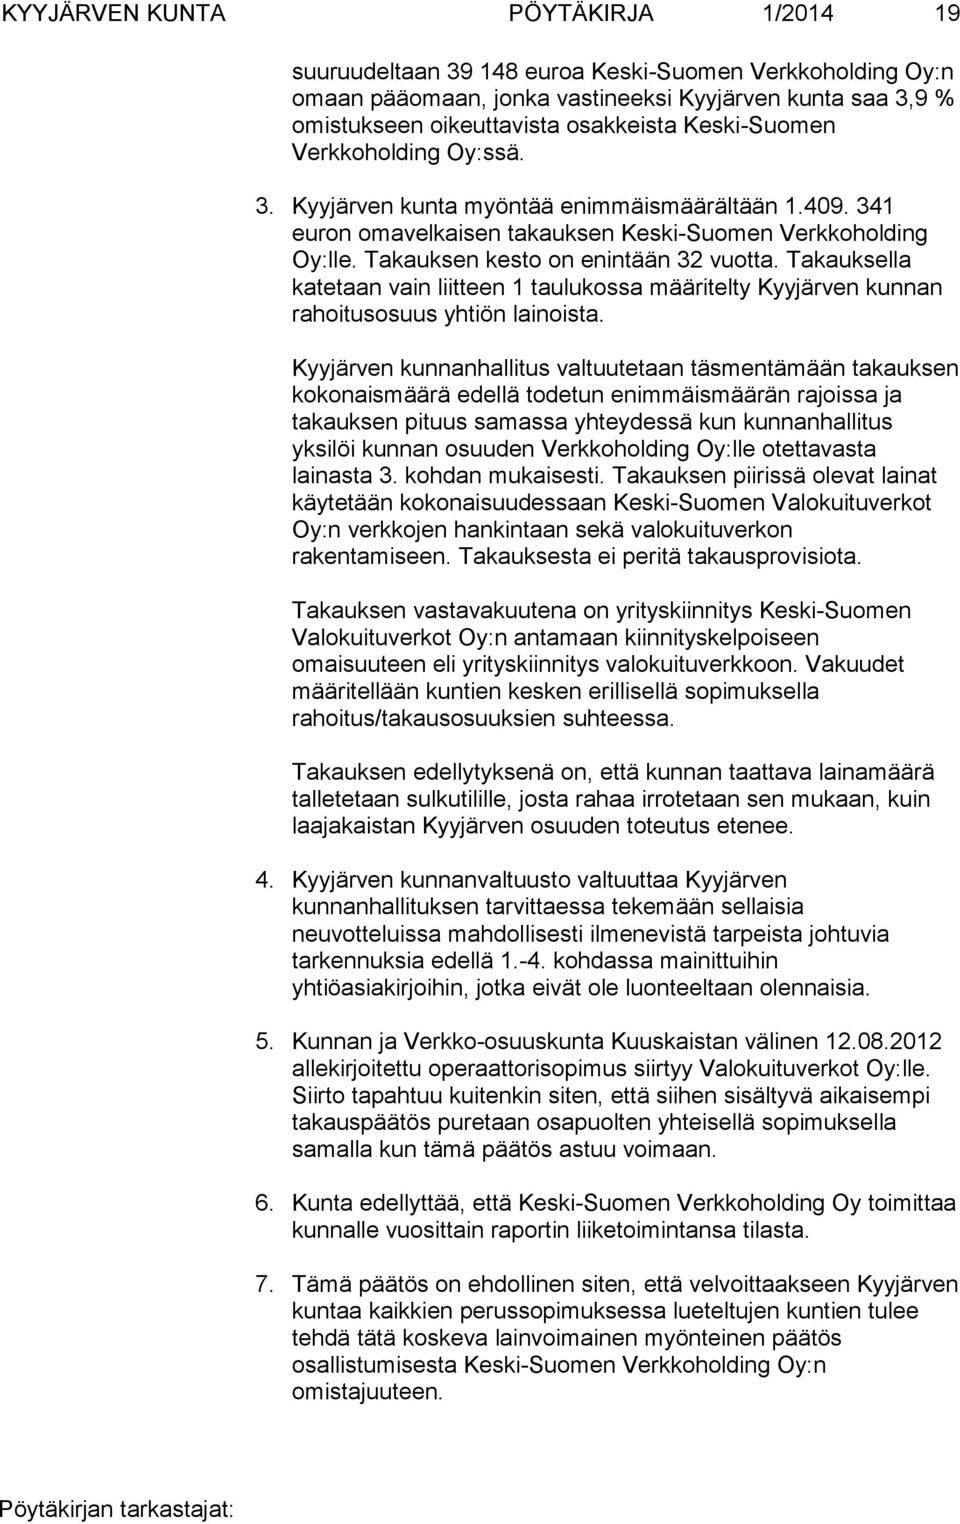 Takauksella katetaan vain liitteen 1 taulukossa määritelty Kyyjärven kunnan rahoitusosuus yhtiön lainoista.